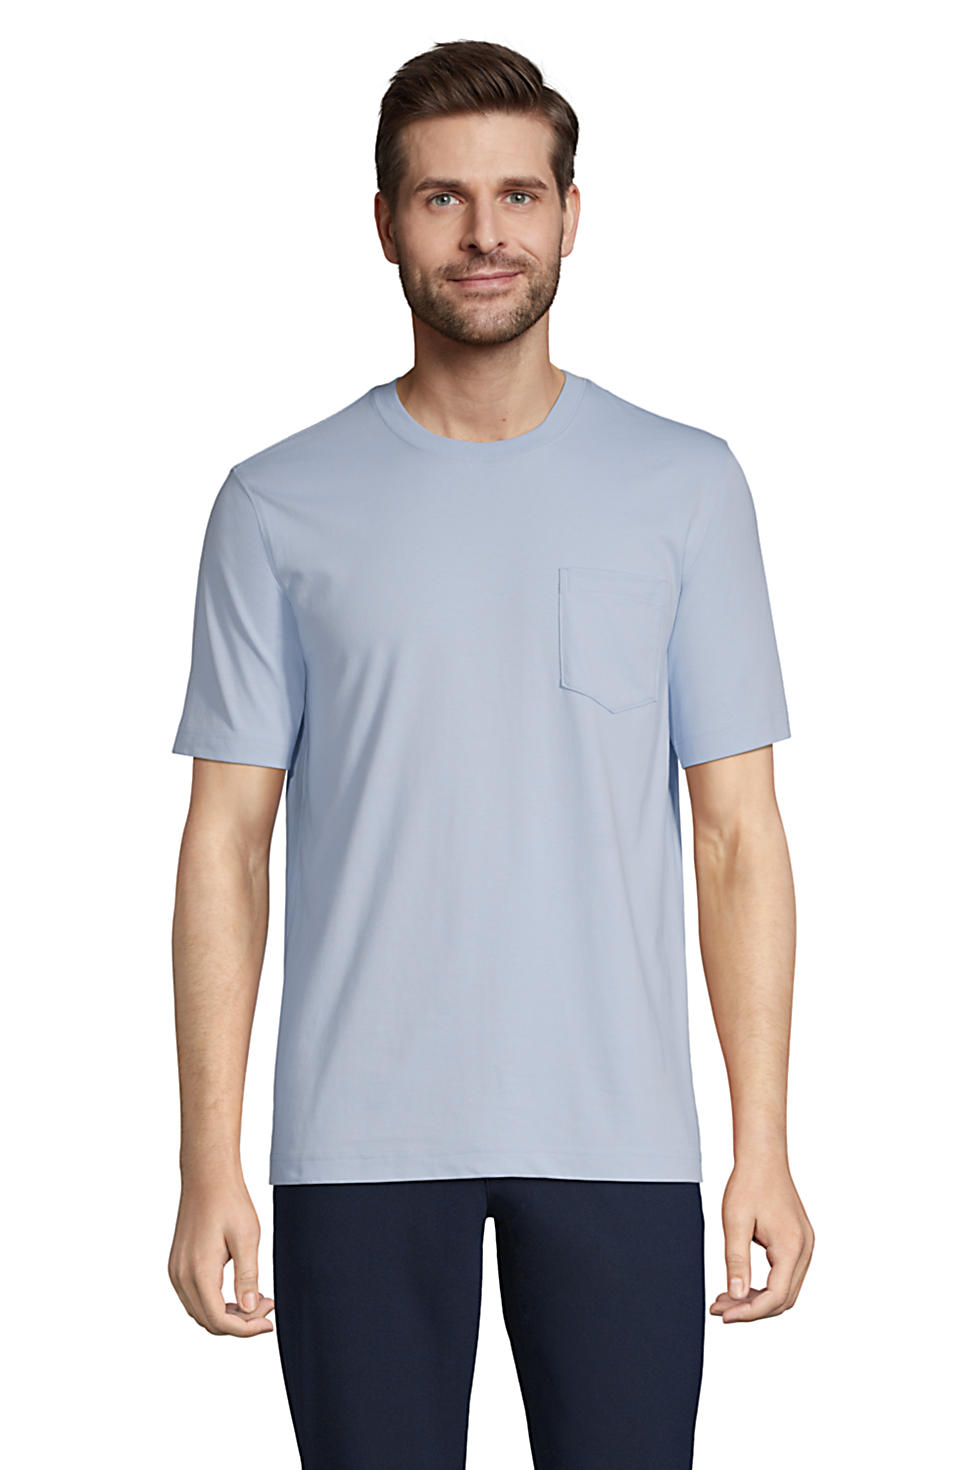 Lands End Men's Super-T Short Sleeve T-Shirt with Pocket (Soft Blue Haze)